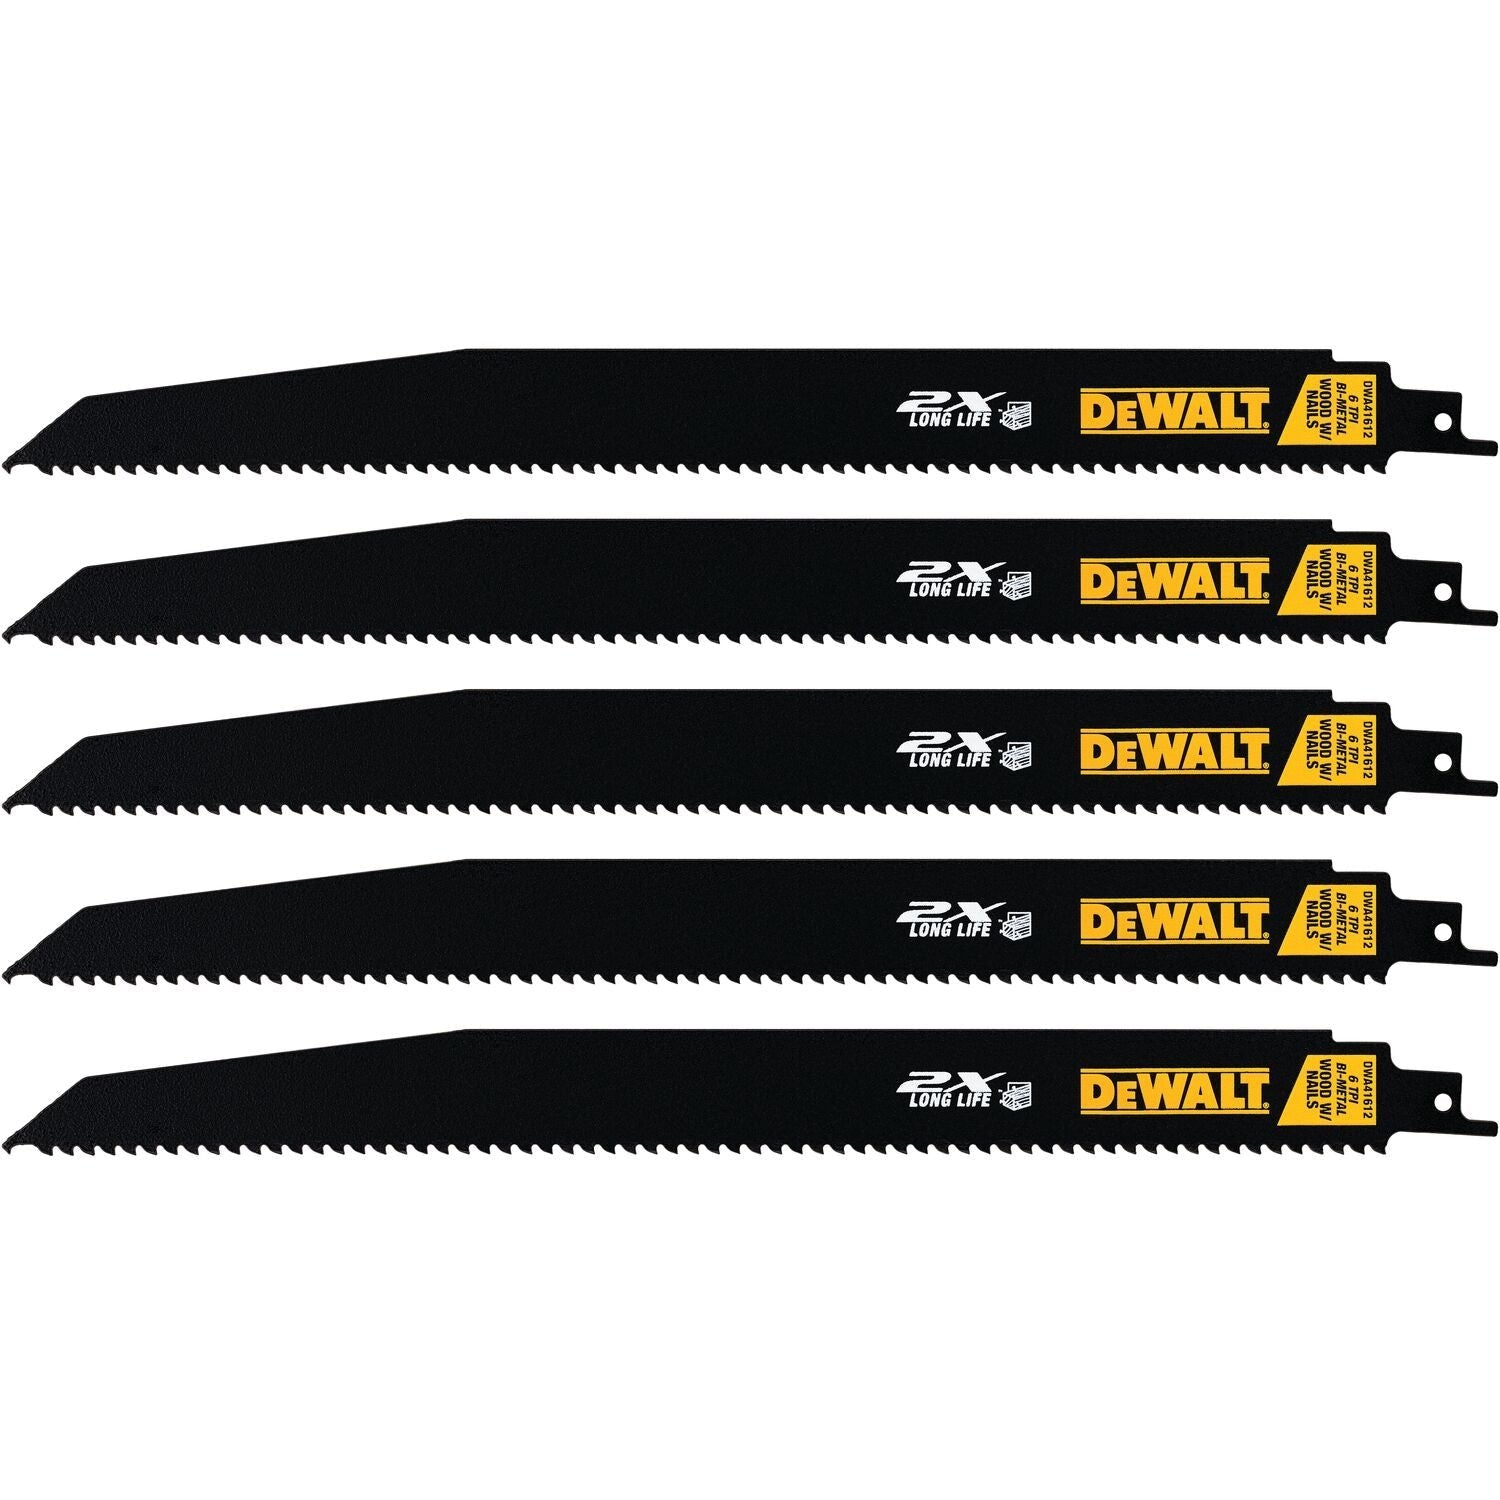 Dewalt DWA41612 - 2X Long Life Wood Cutting Reciprocating Saw Blades